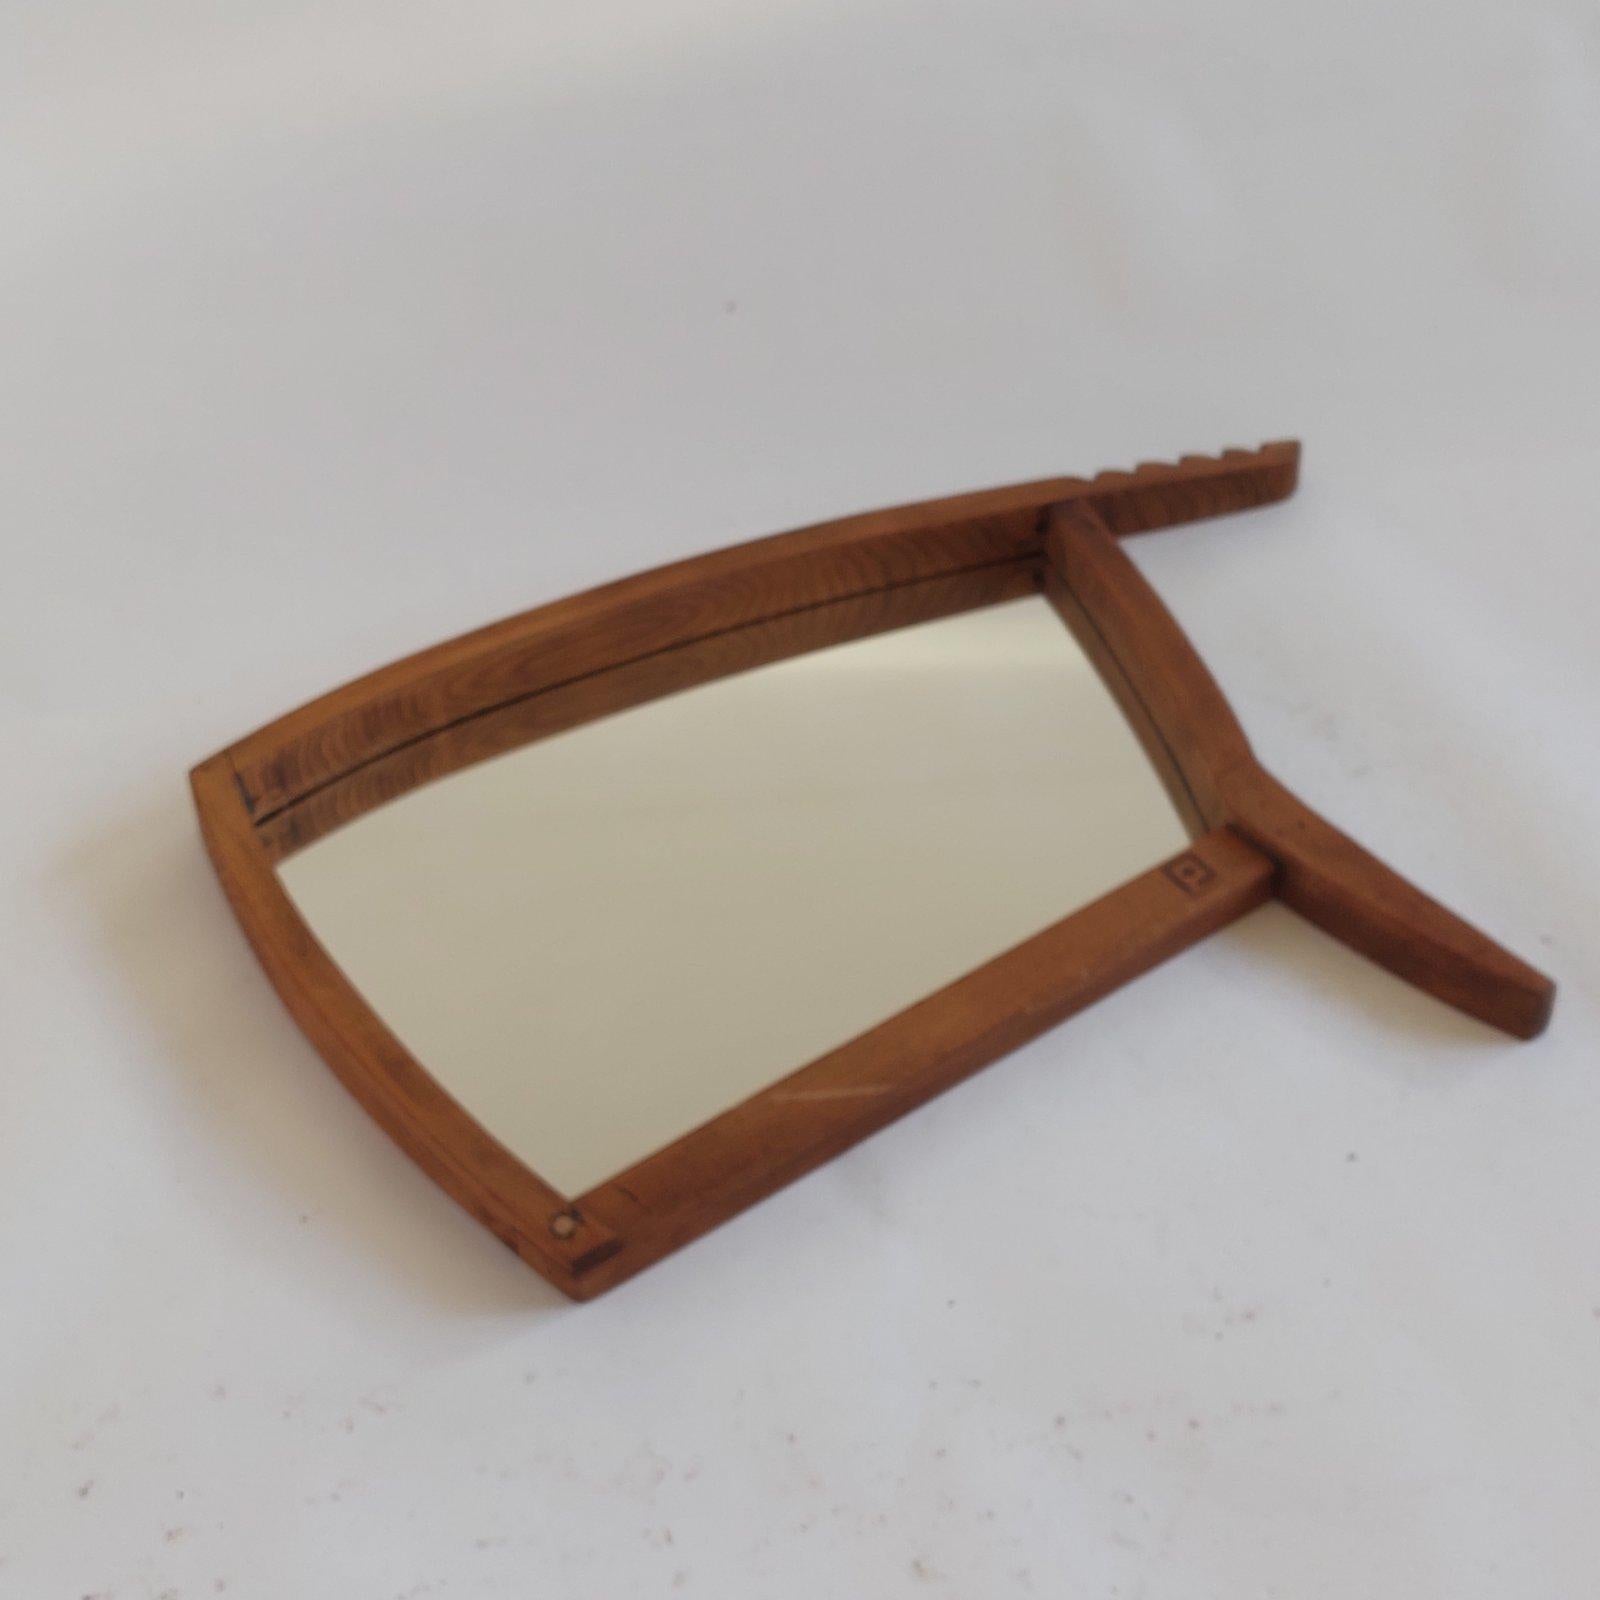 Hier präsentieren wir einen Spiegelrahmen aus Walnussholz, der von PUNKT Workshop aus antiken Stuhlteilen handgefertigt wurde. PUNKT Workshop lässt sich vom Upcycling großartiger Holz- und Lederteile aus antiken und Vintage-Möbeln inspirieren. Sie